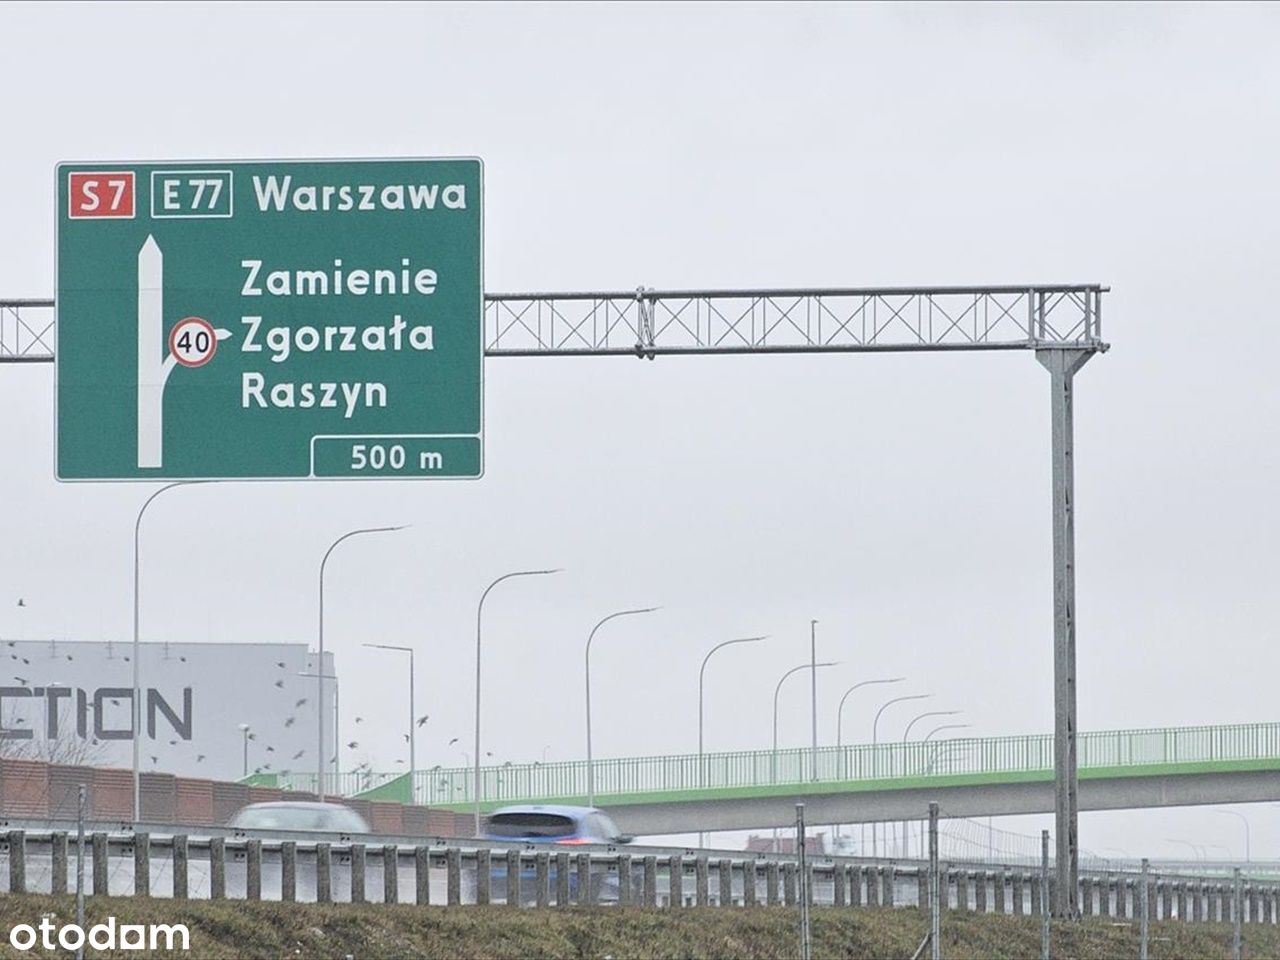 Działka Usługowa przy trasie S7, Węzeł Zamienie.